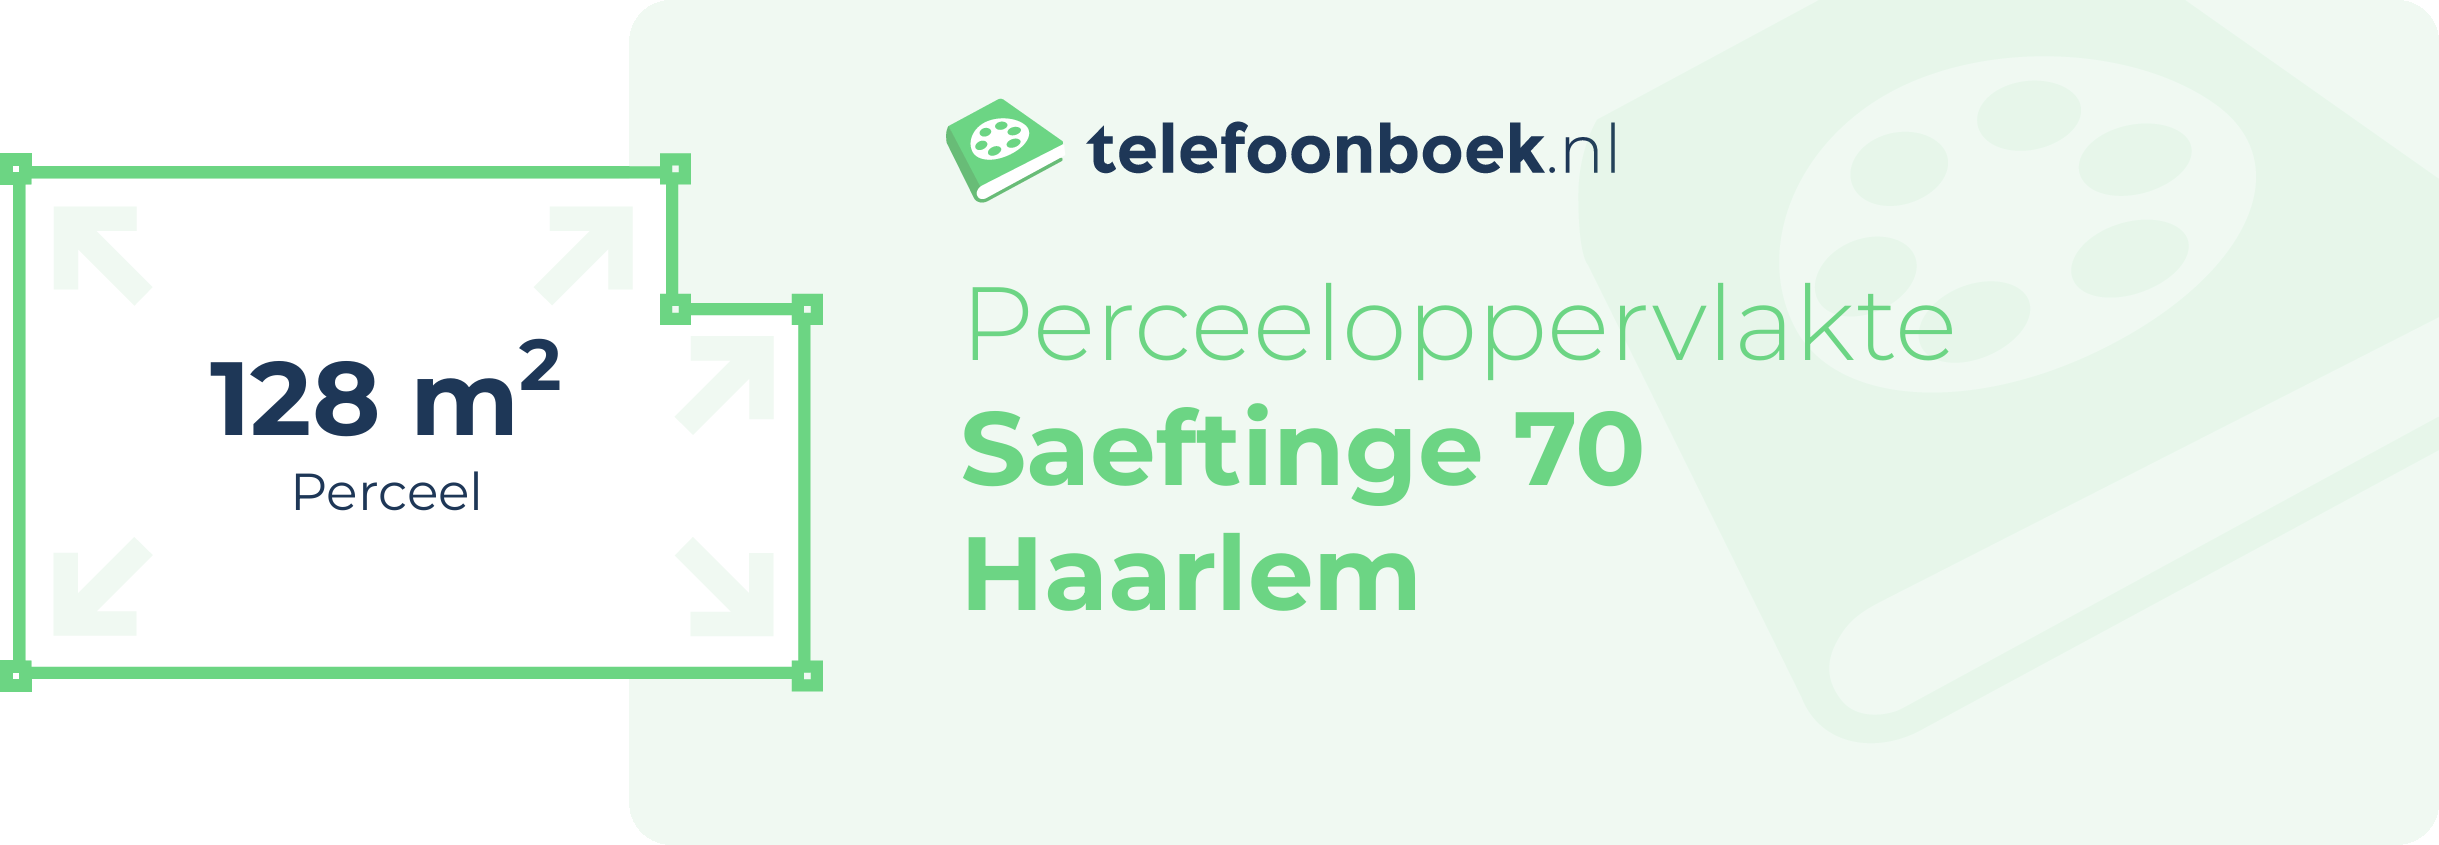 Perceeloppervlakte Saeftinge 70 Haarlem